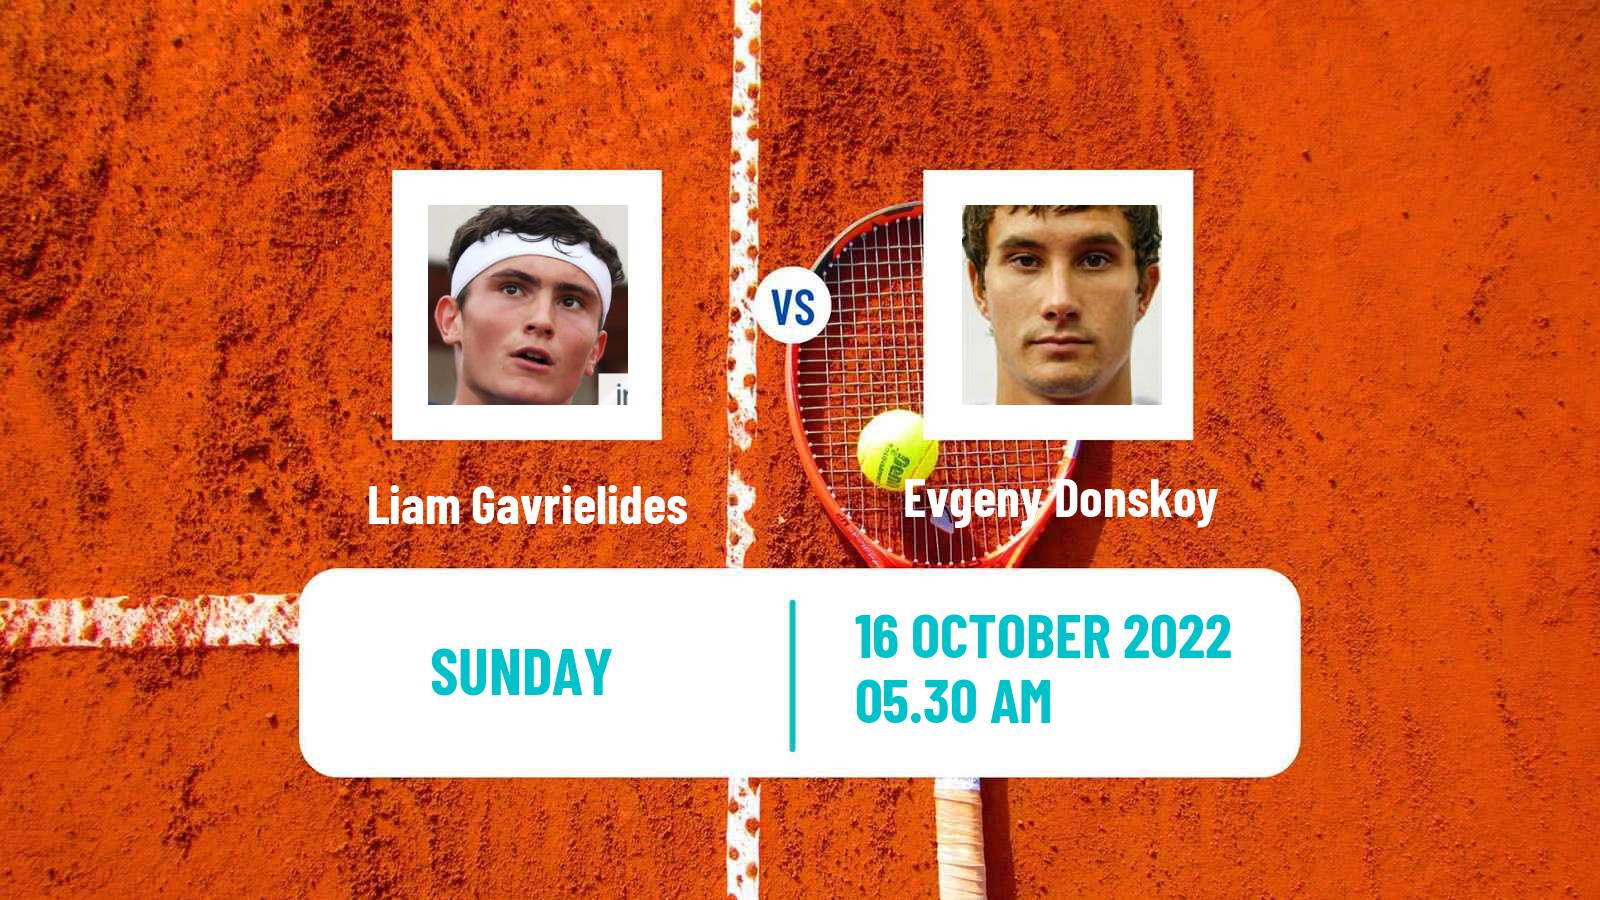 Tennis ATP Challenger Liam Gavrielides - Evgeny Donskoy